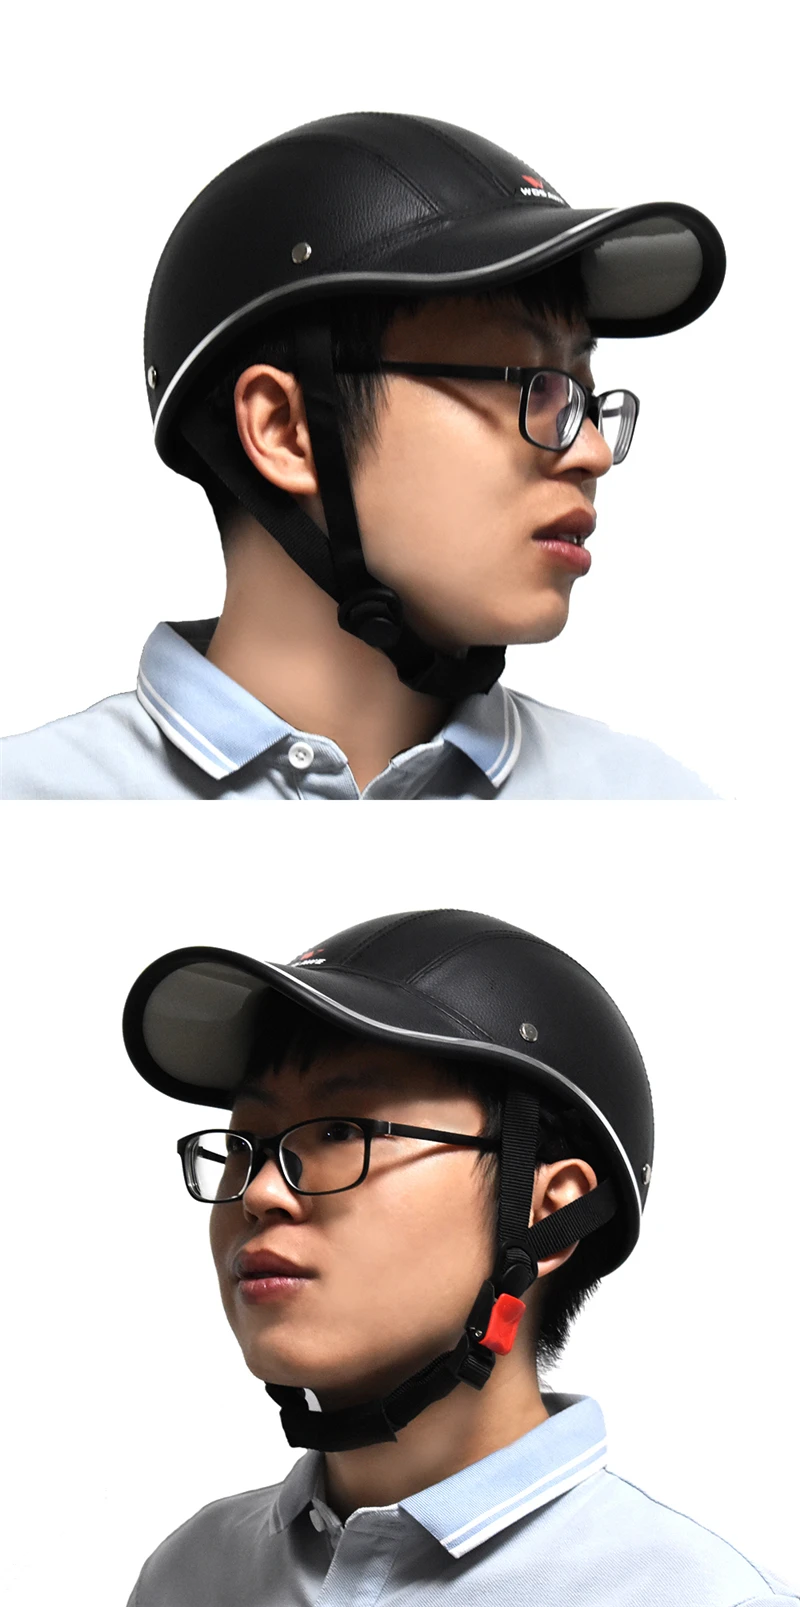 WOSAWE шлем для шоссейного велосипеда, Ретро стиль, персональный шлем, полушлем MTB, летний, искусственная кожа, мотоциклетный, велосипедный шлем для мужчин и женщин